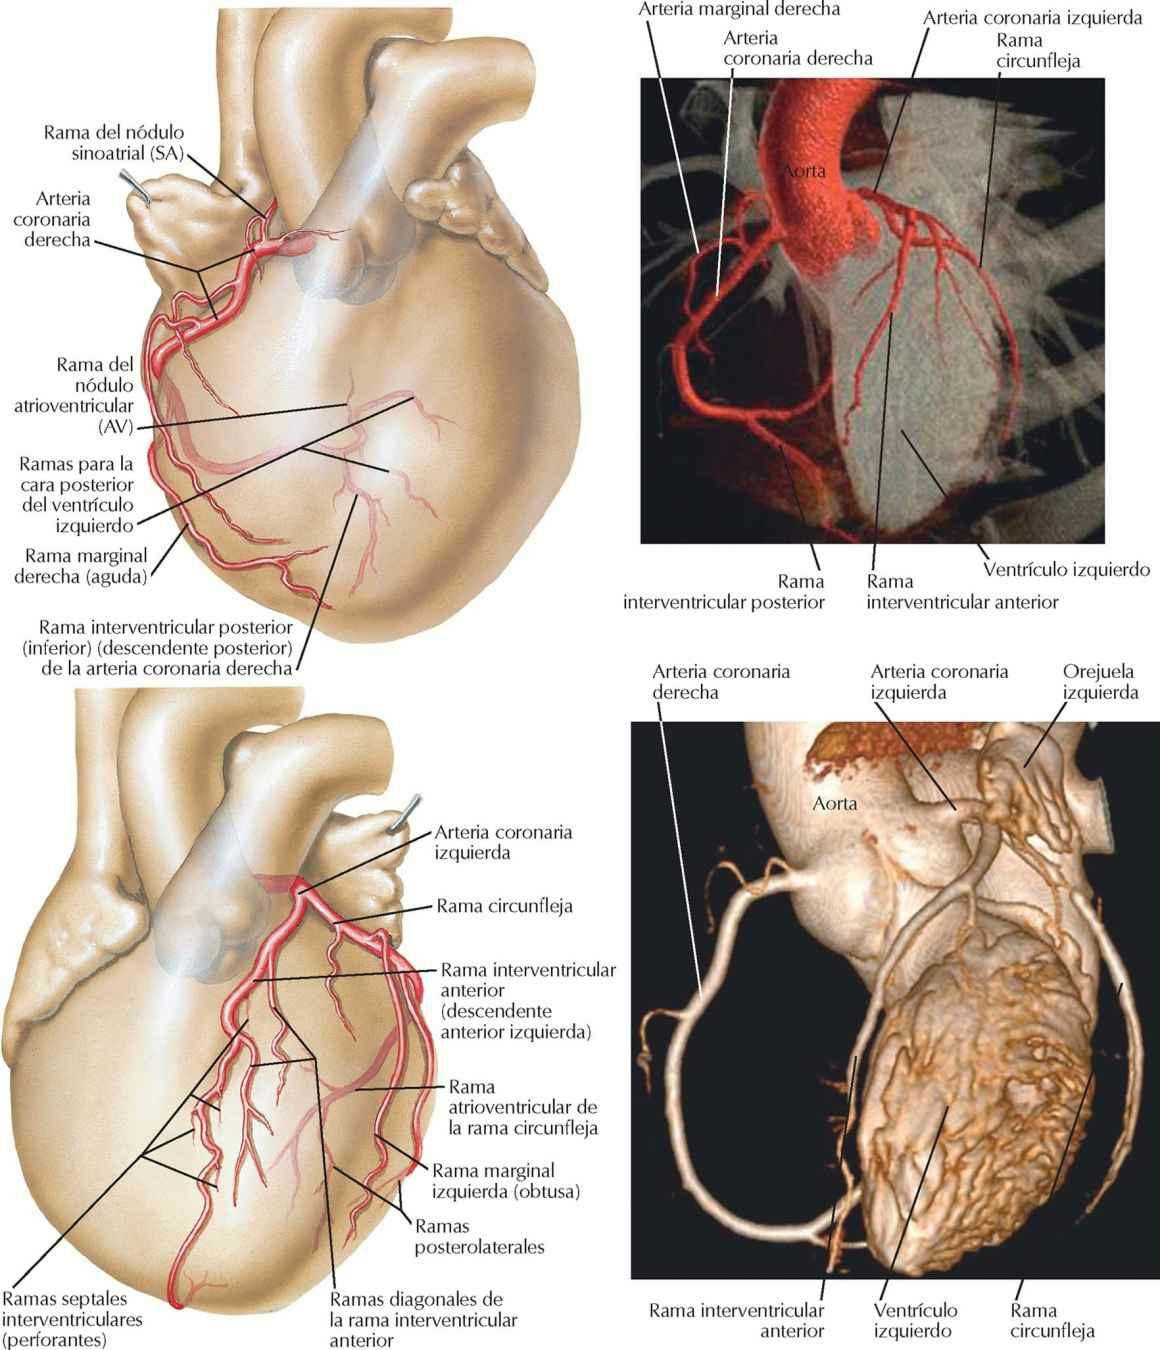 Arterias coronarias: visiones anteriores, TC y 3D